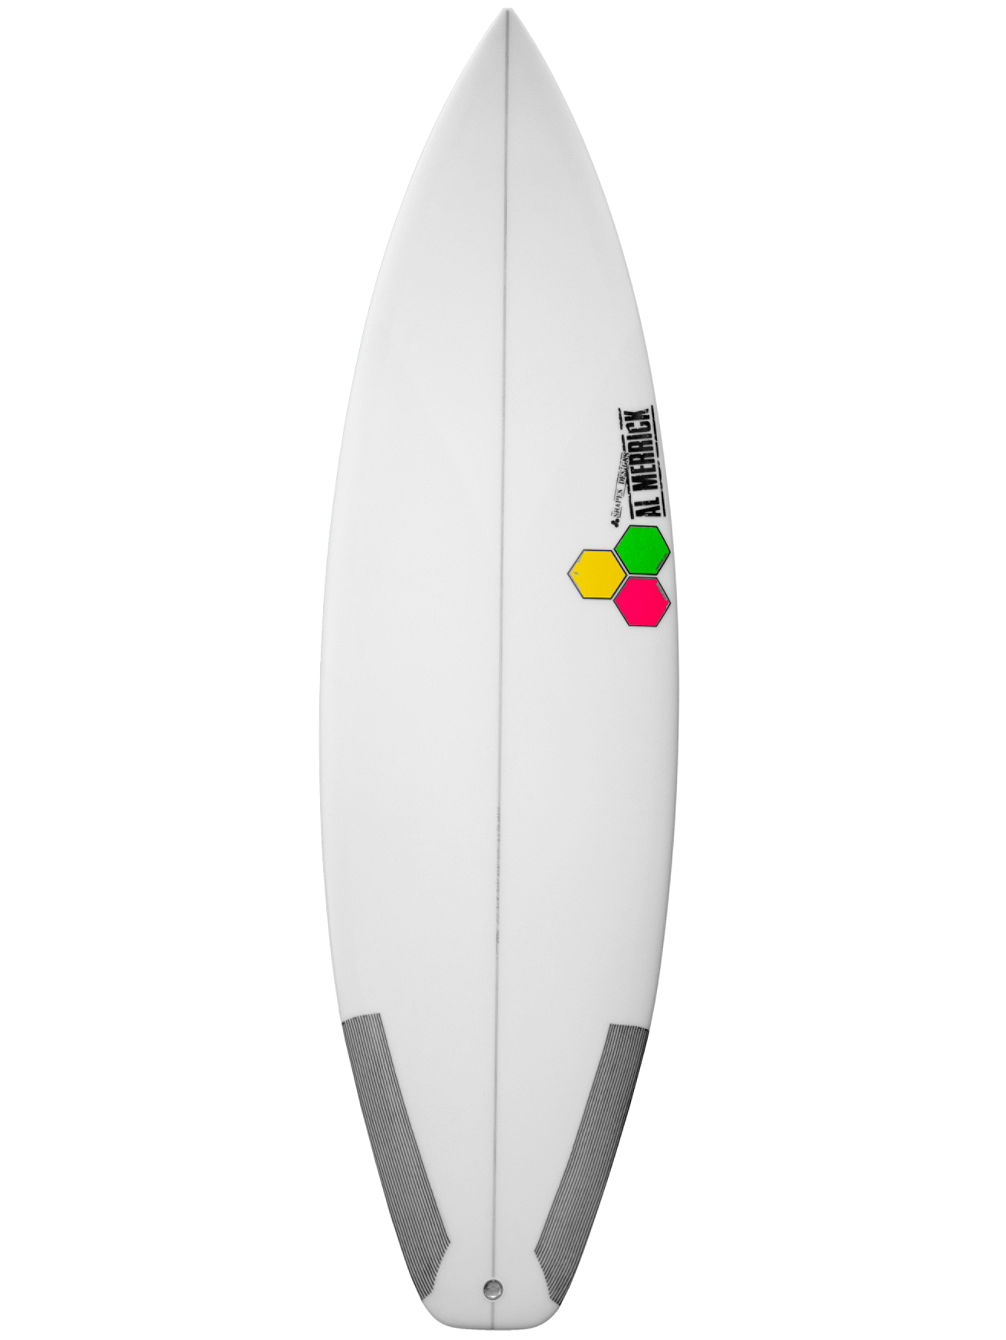 Channel Island New Flyer 5'5 Surfboard